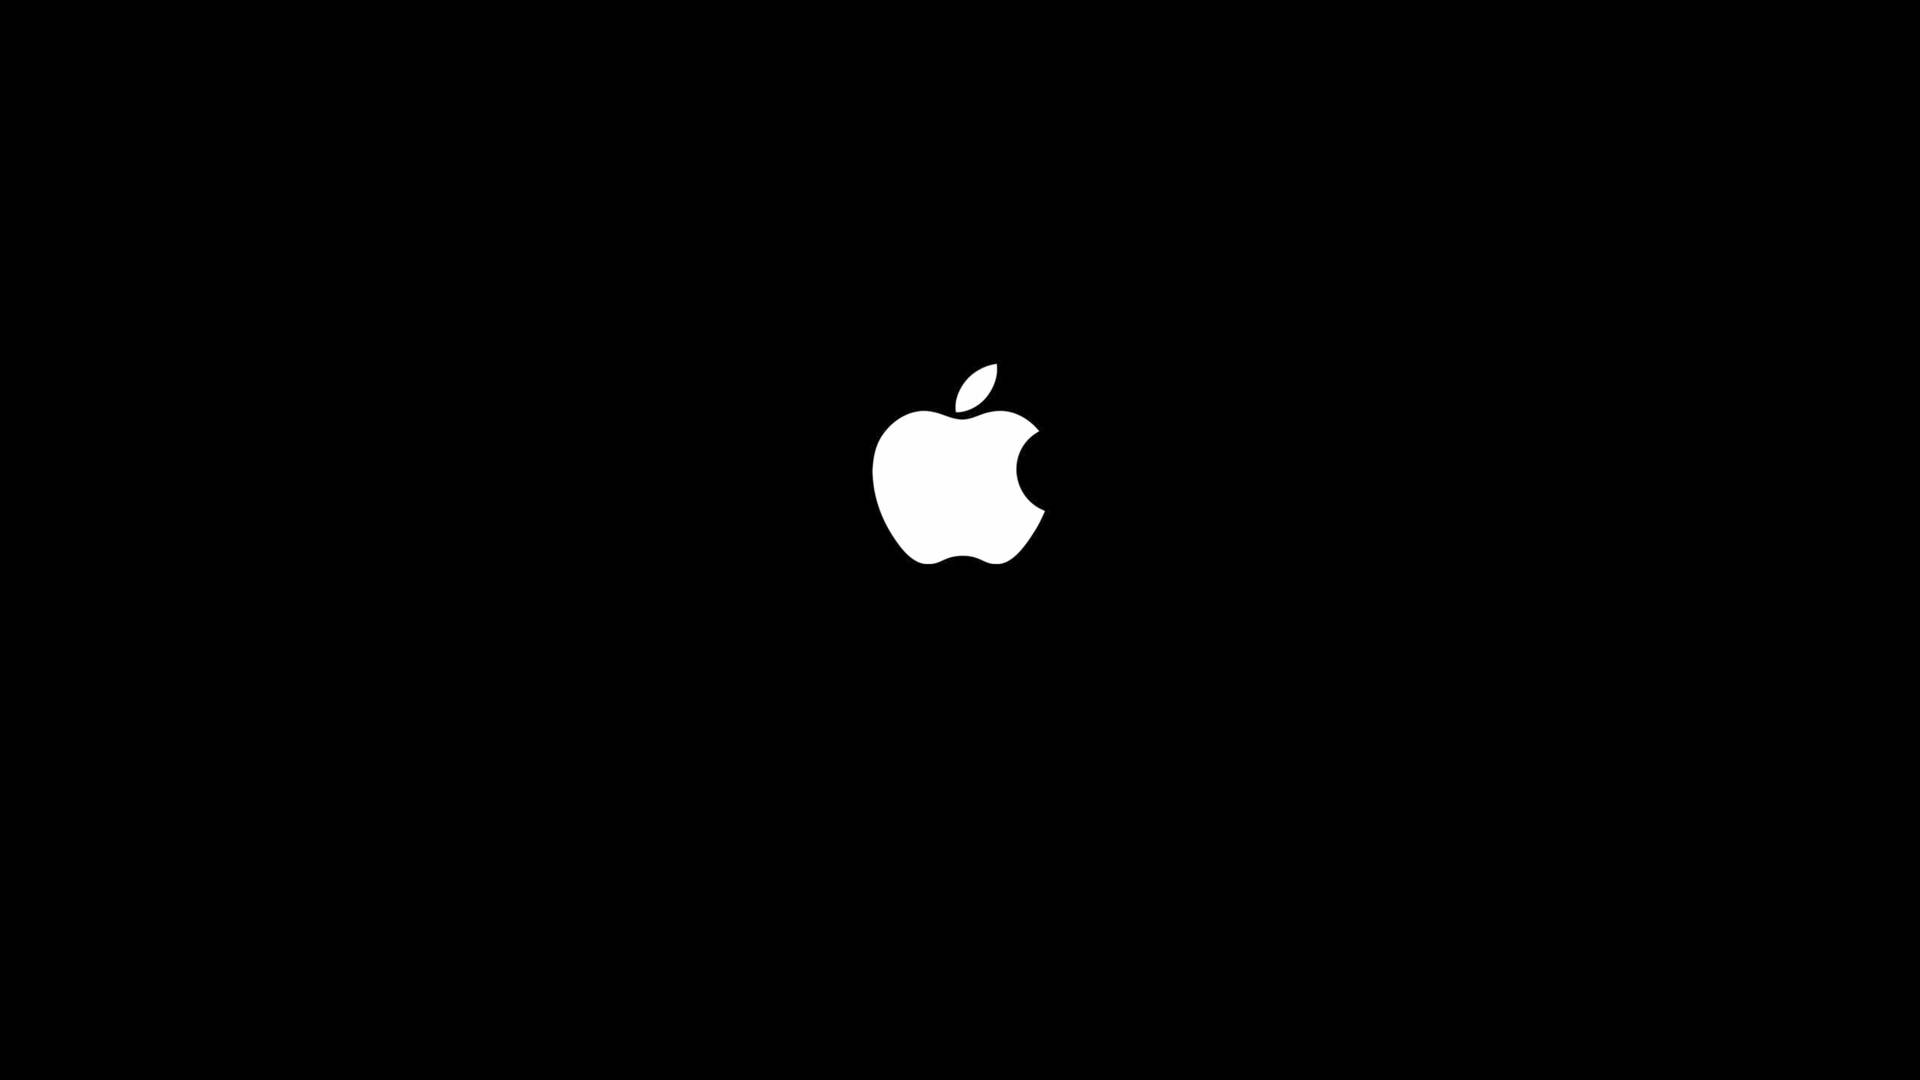 Apple 4k Ultra Hd Black Background Wallpaper